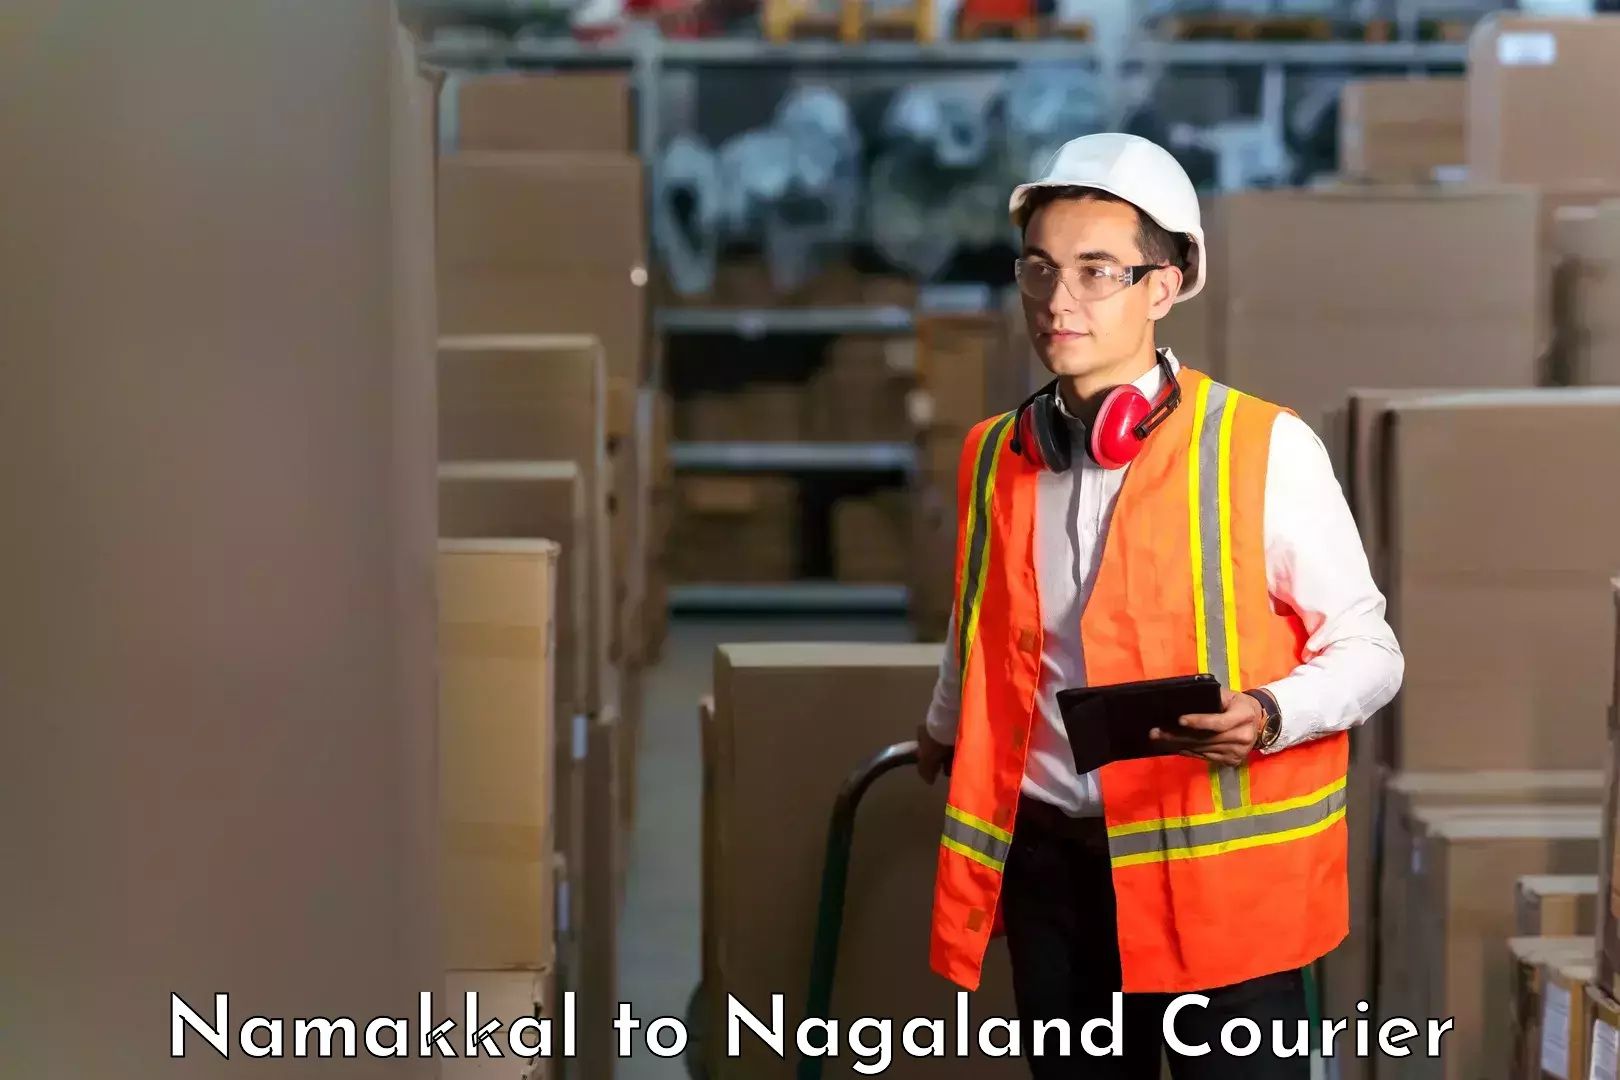 Global freight services Namakkal to Nagaland